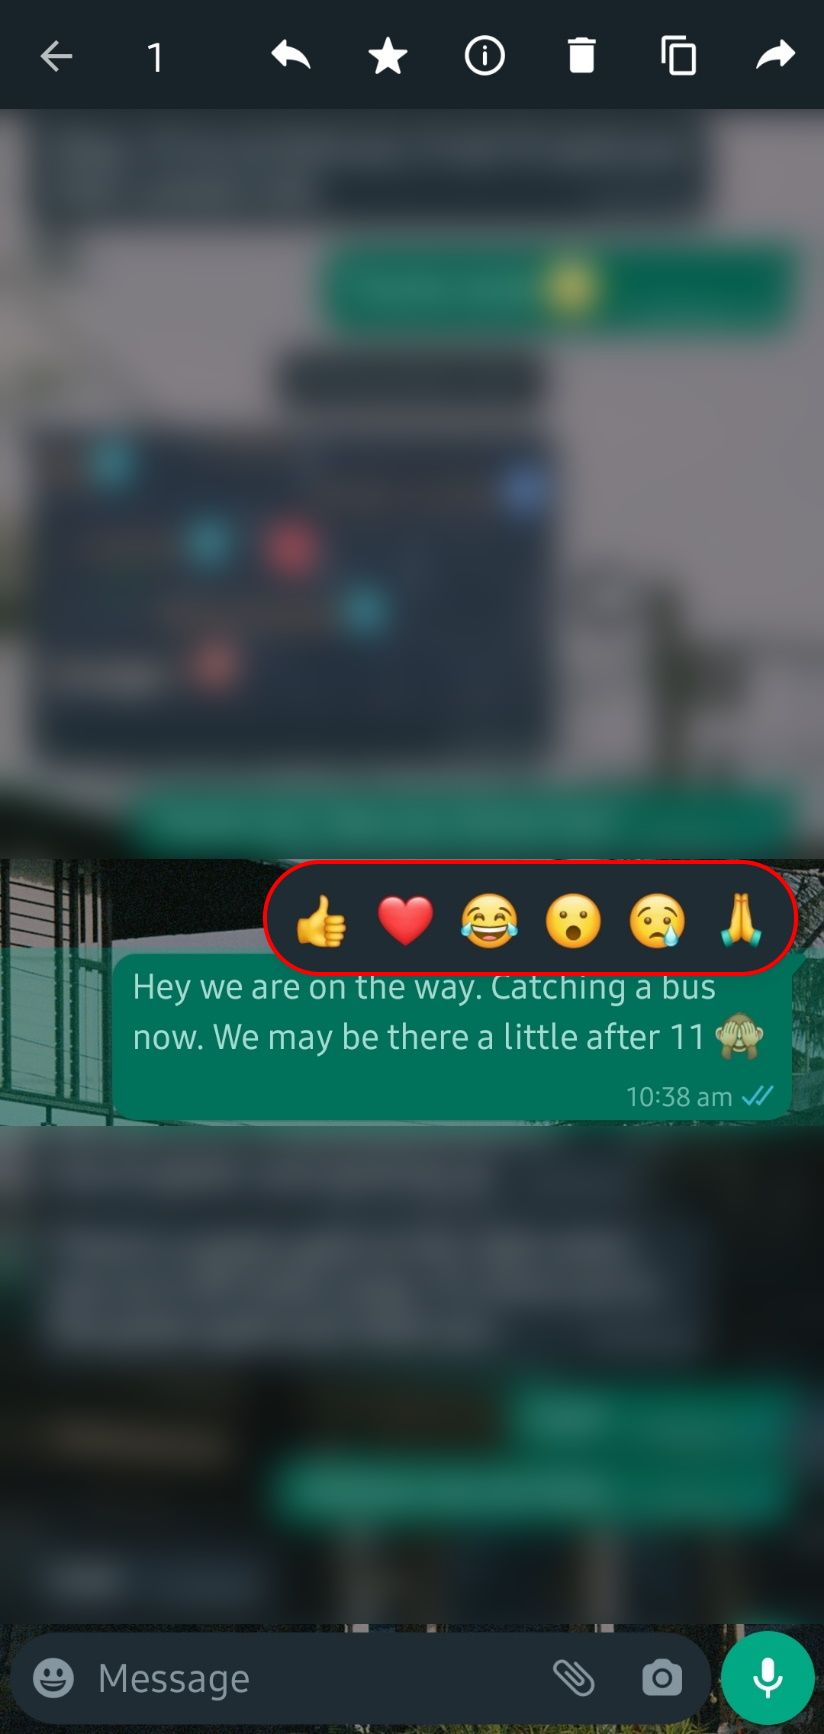 bate-papo do WhatsApp com um pop-up de reação com vários emojis disponíveis para reagir à mensagem com